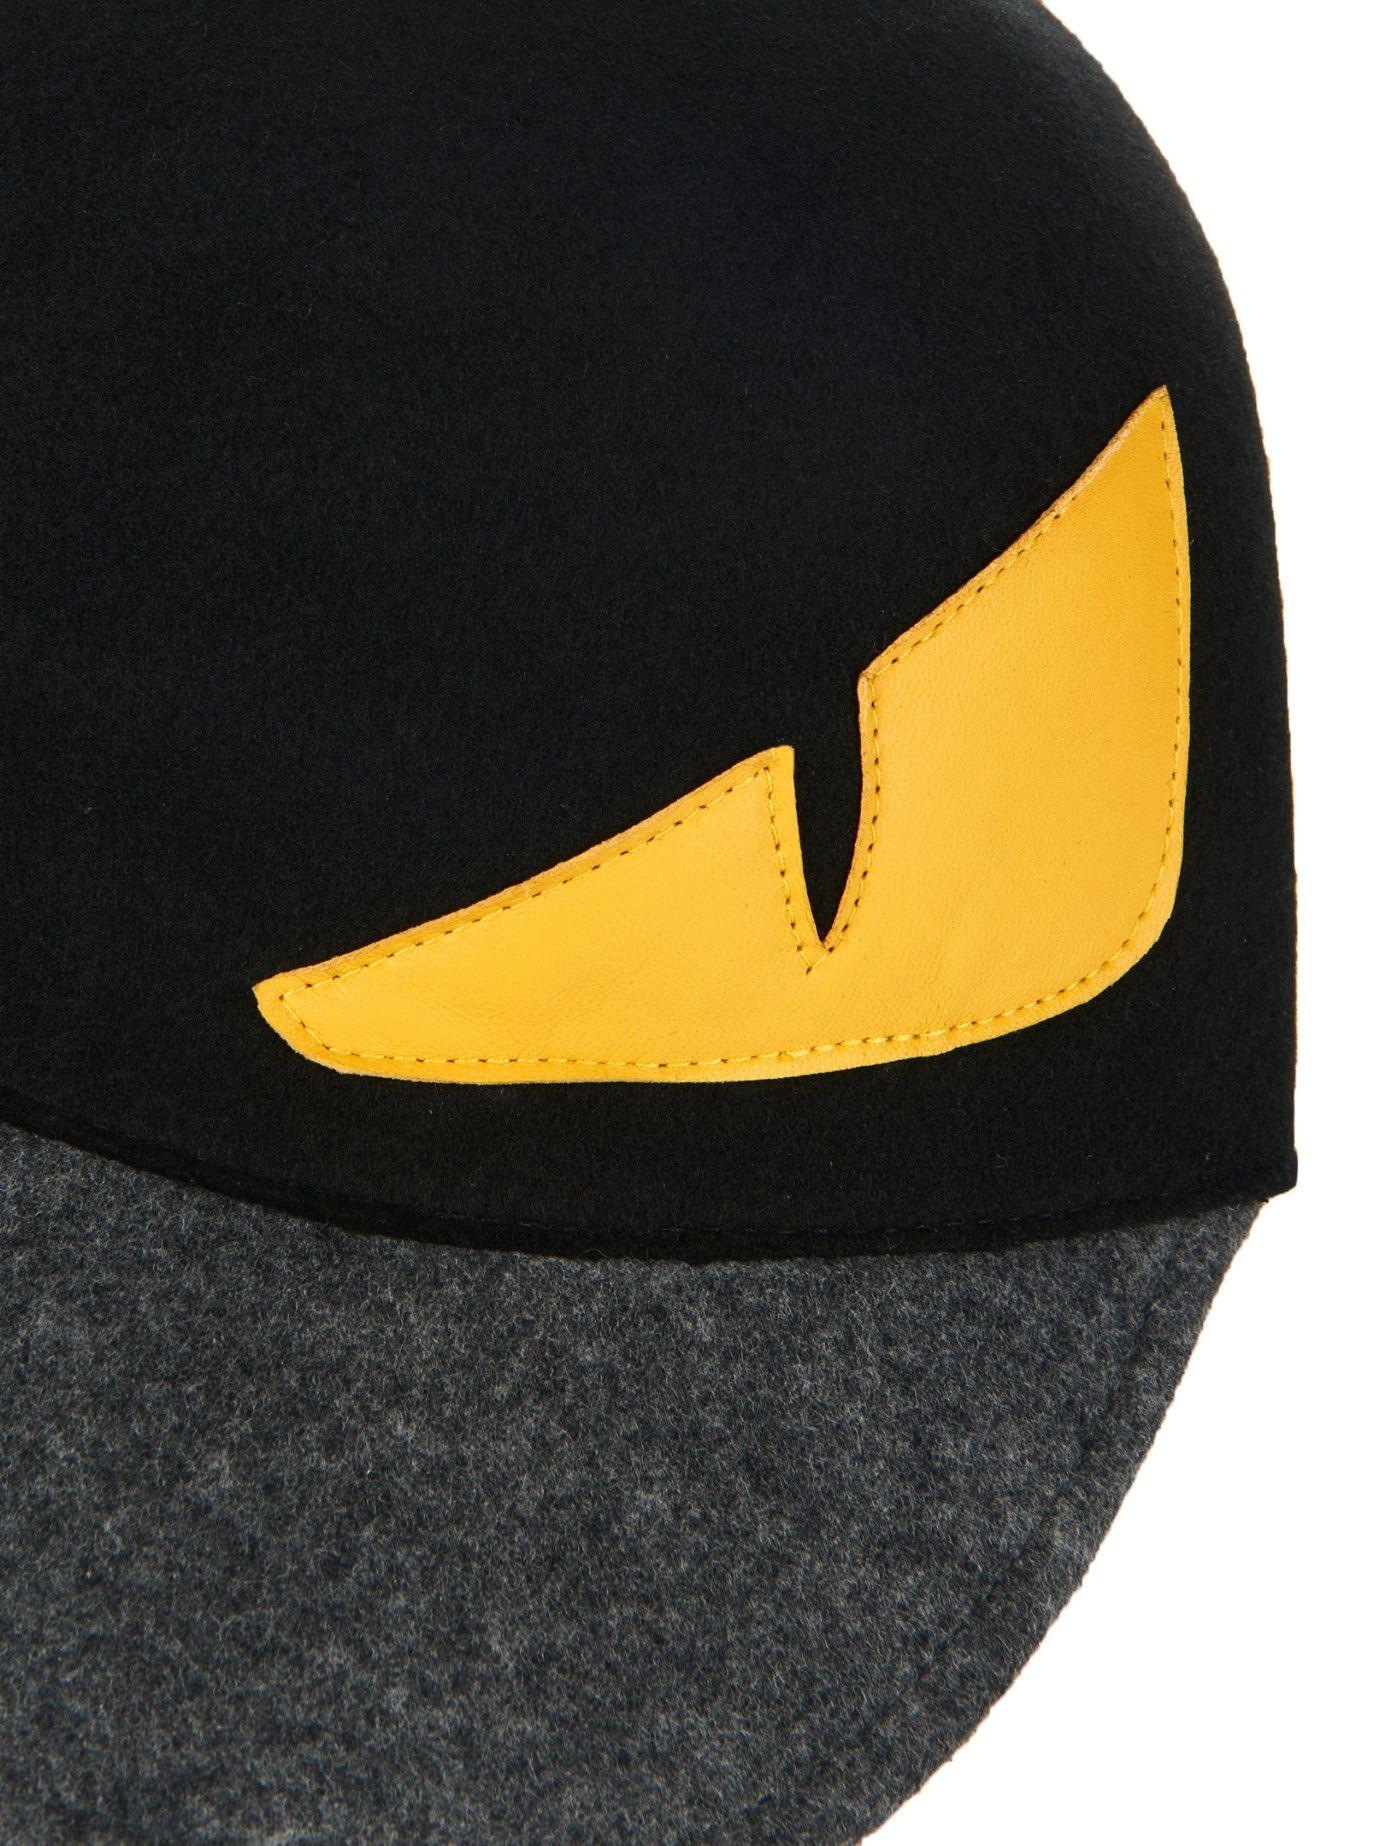 Fendi Monster Eyes Logo - Fendi Monster Eyes Wool-Felt Cap in Black for Men - Lyst